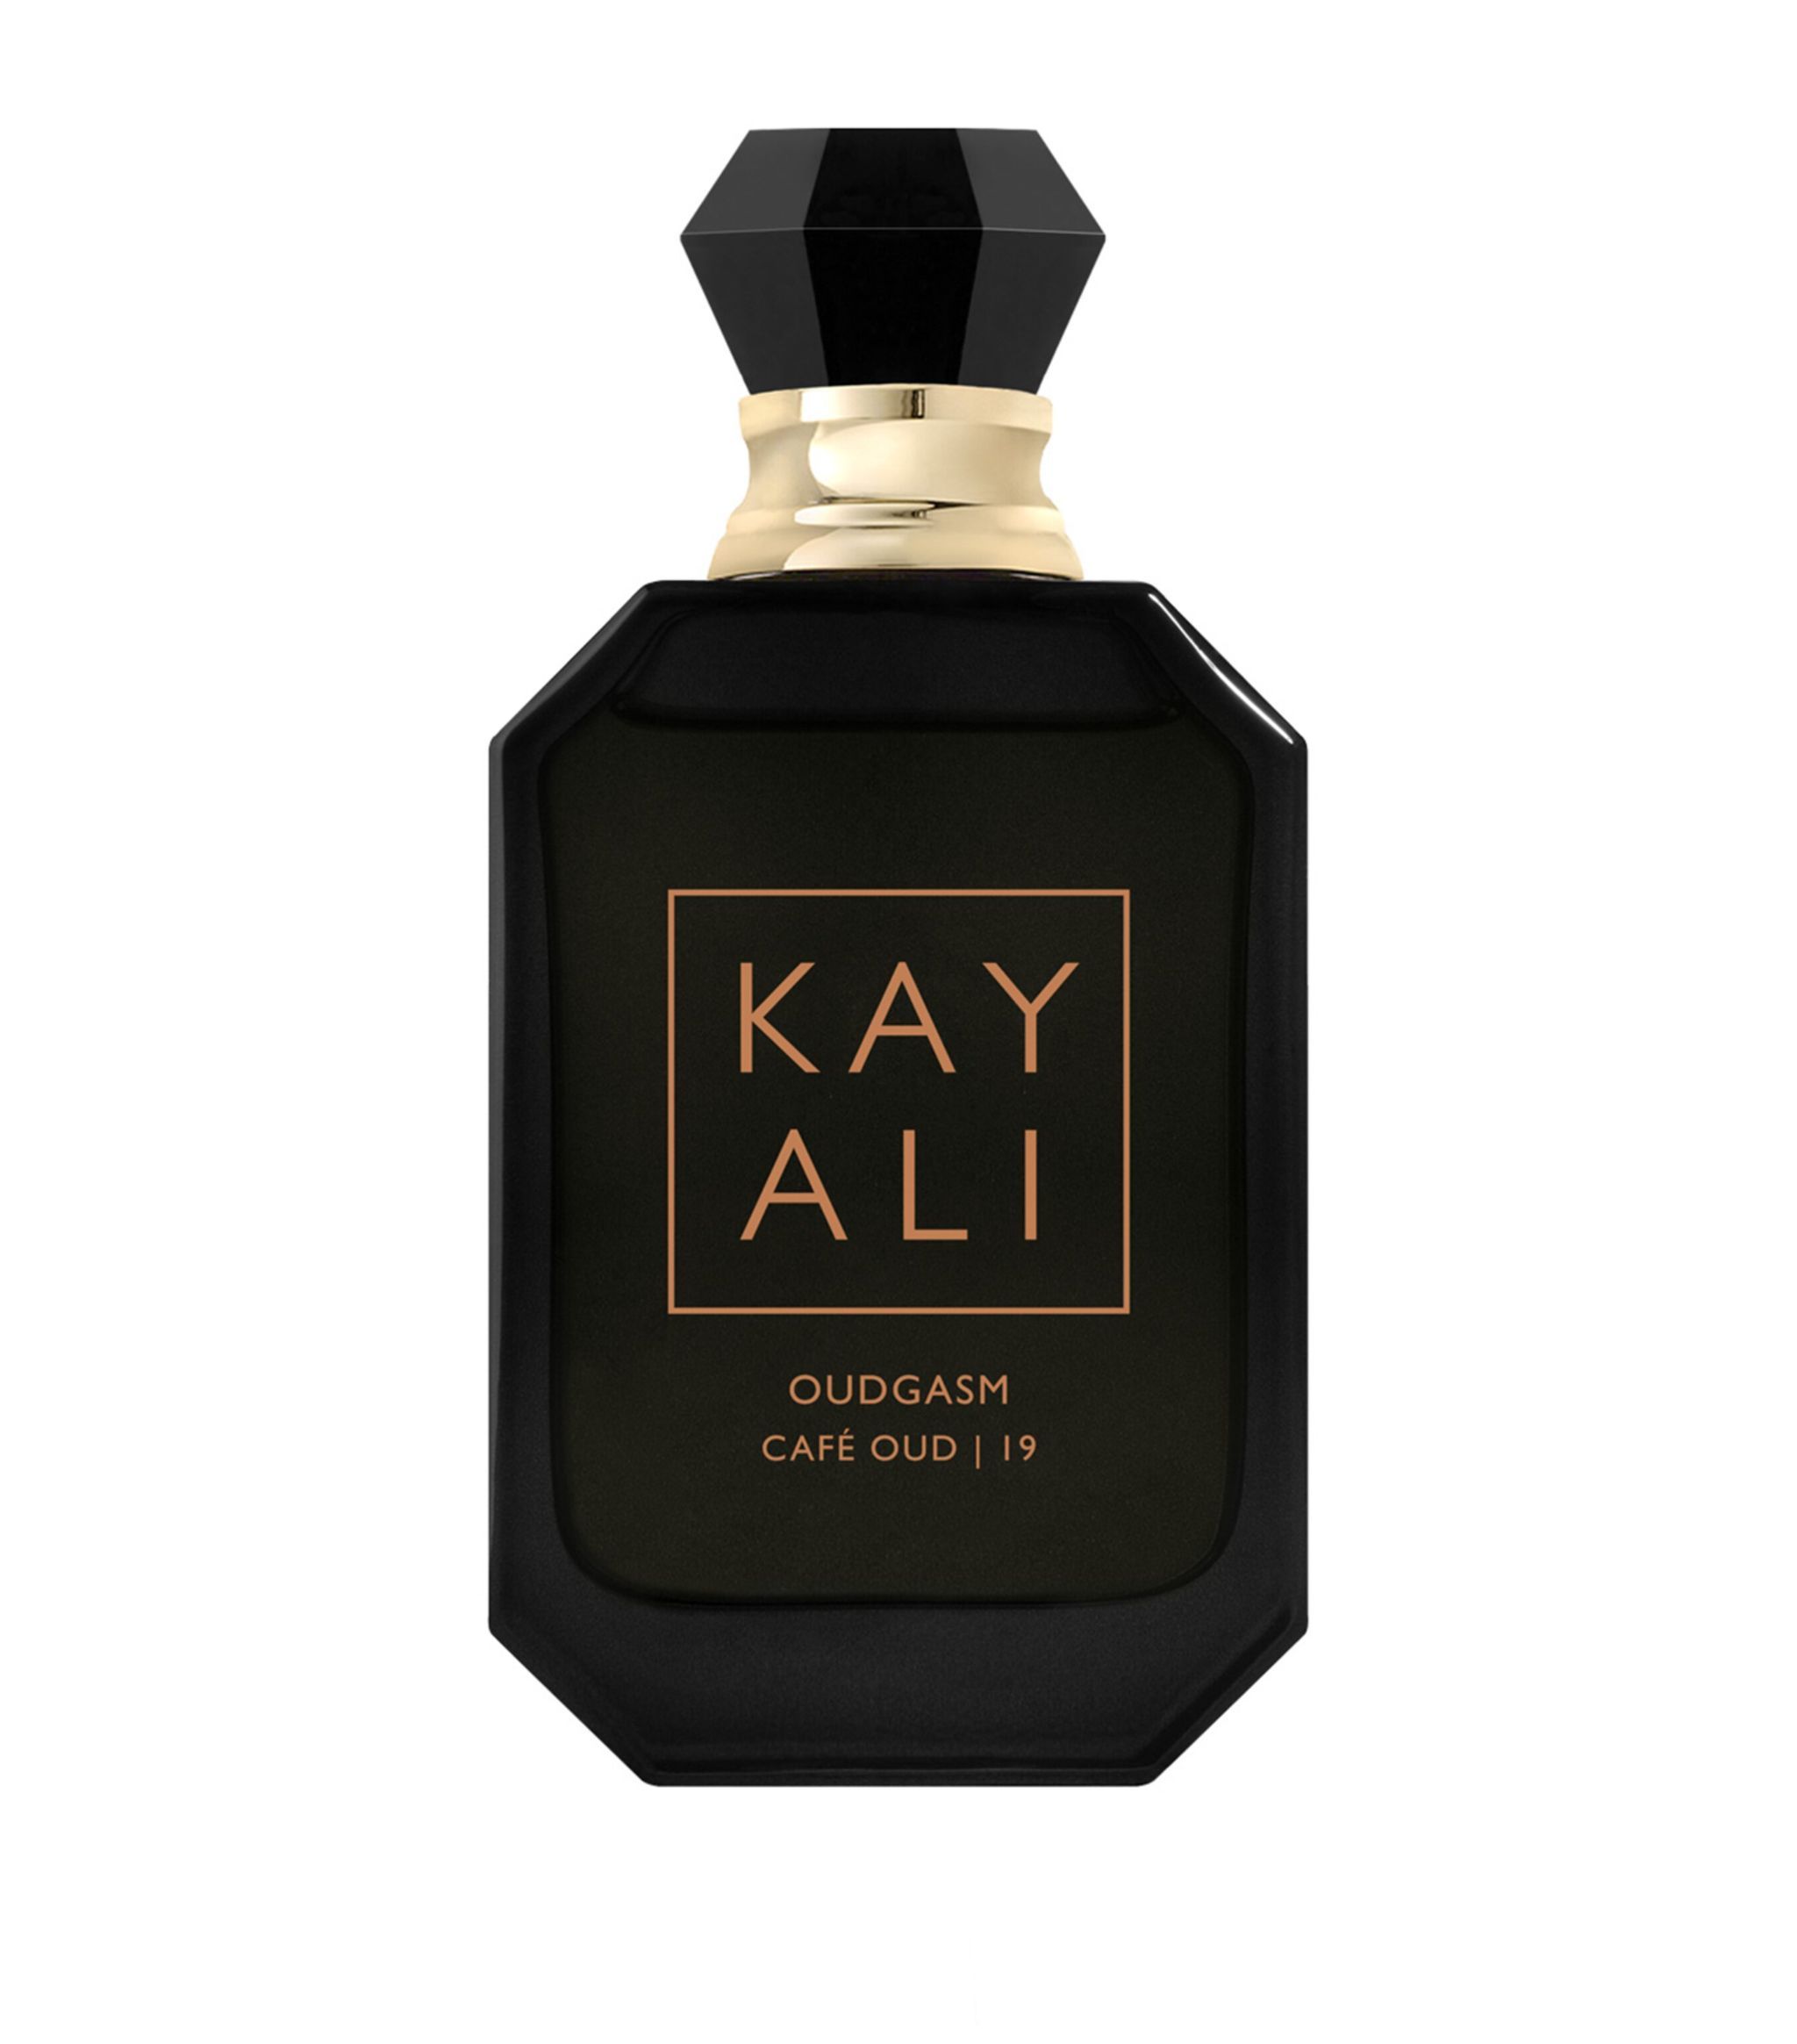 Kayali Oudgasm Café Oud 19 Eau de Parfum Intense (50ml) | Harrods